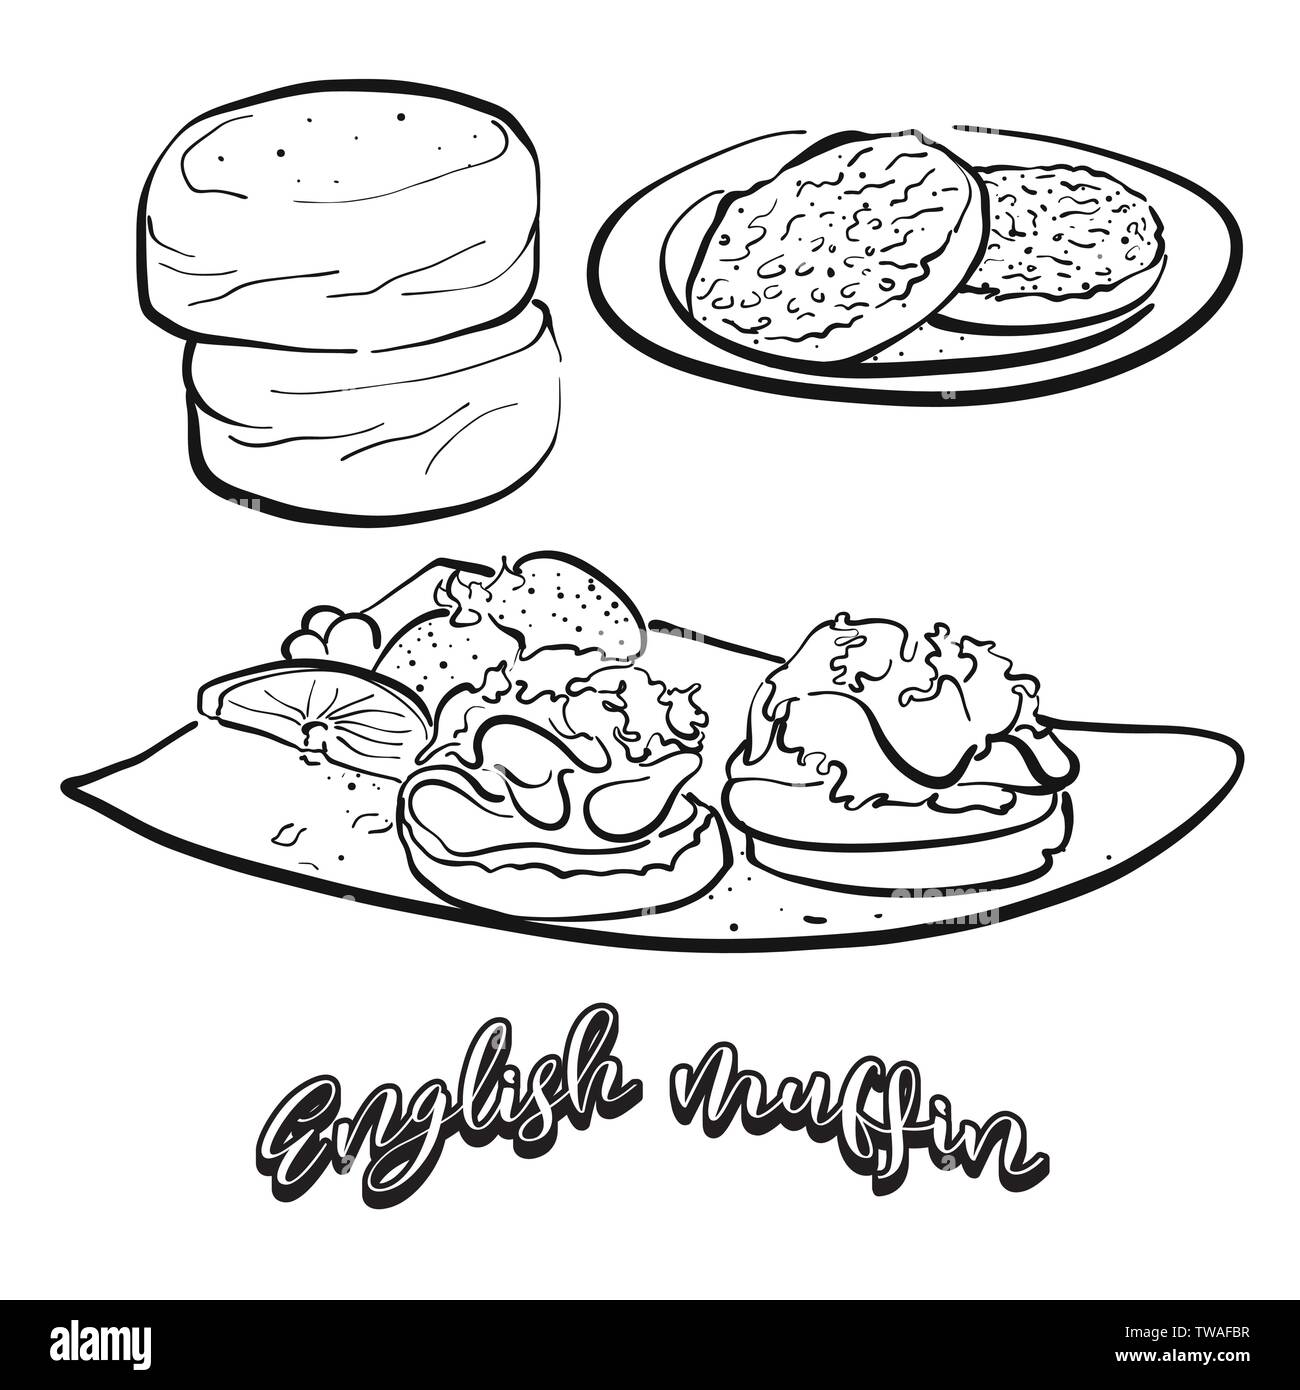 Englische Muffins essen Skizze auf dem Schwarzen Brett. Vektor Zeichnung von Hefe Brot, in der Regel in Großbritannien bekannt. Essen Abbildung Serie. Stock Vektor